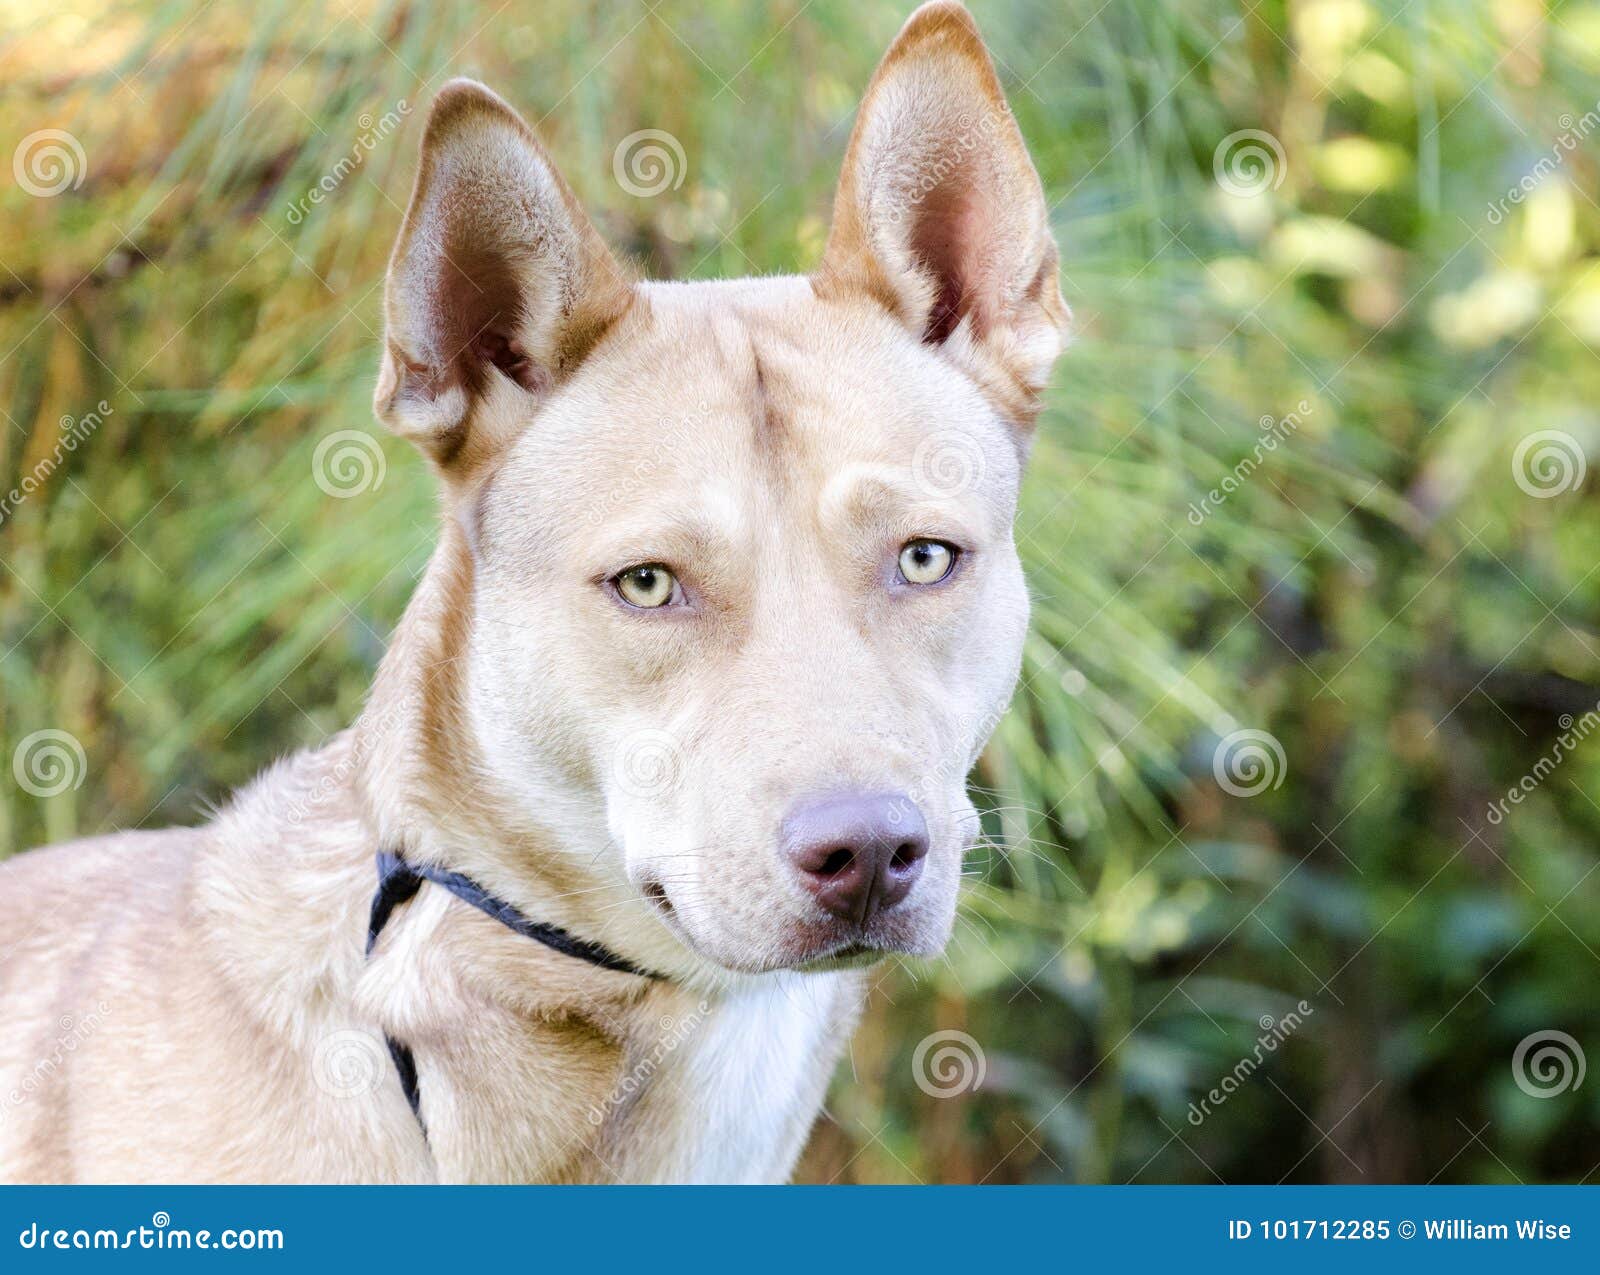 Pharaoh Hound Siberian Husky Mixed Breed Dog Stock Image ...